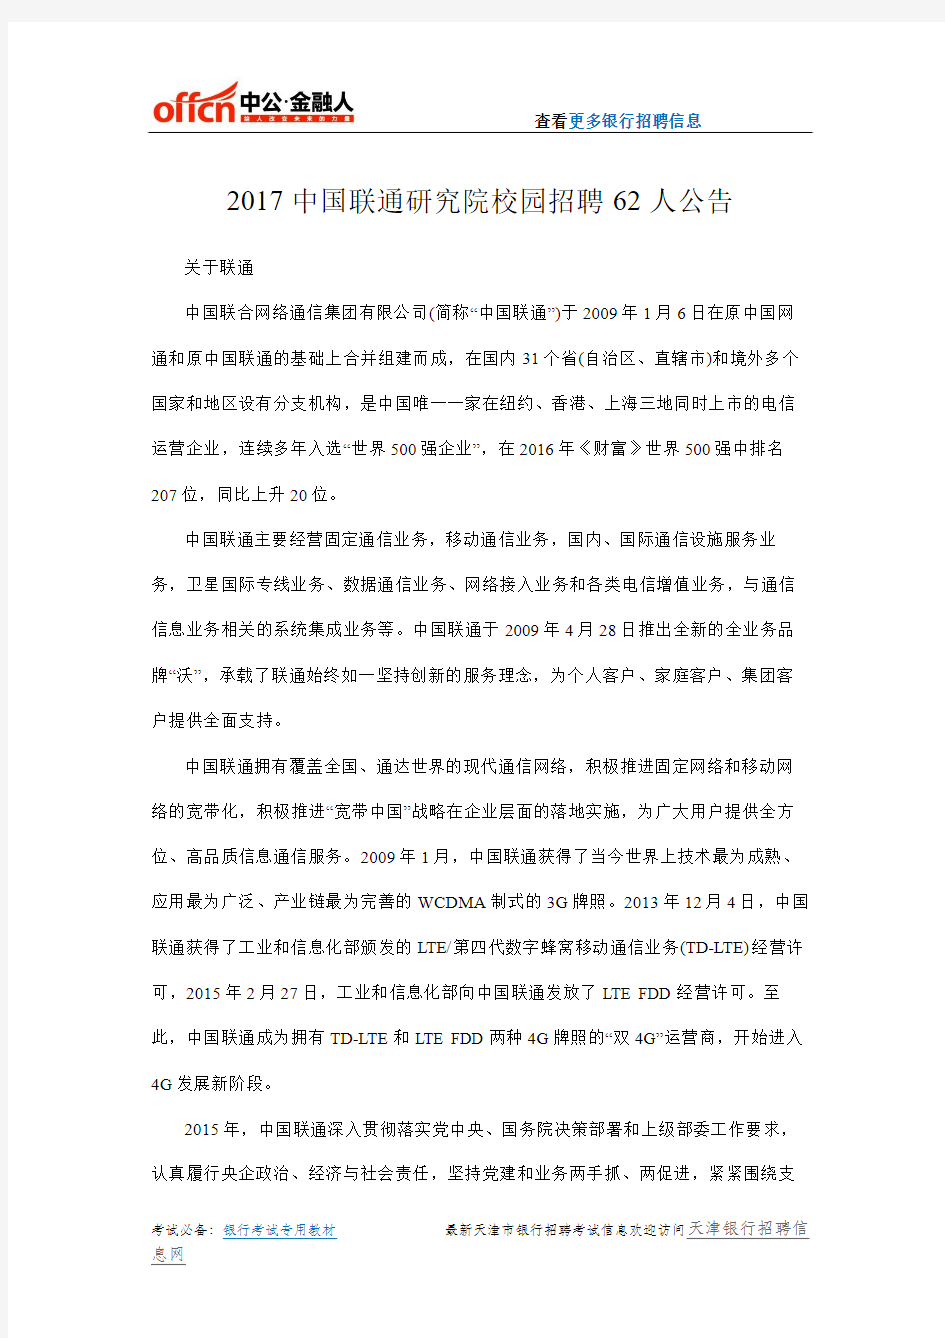 2017中国联通研究院校园招聘62人公告